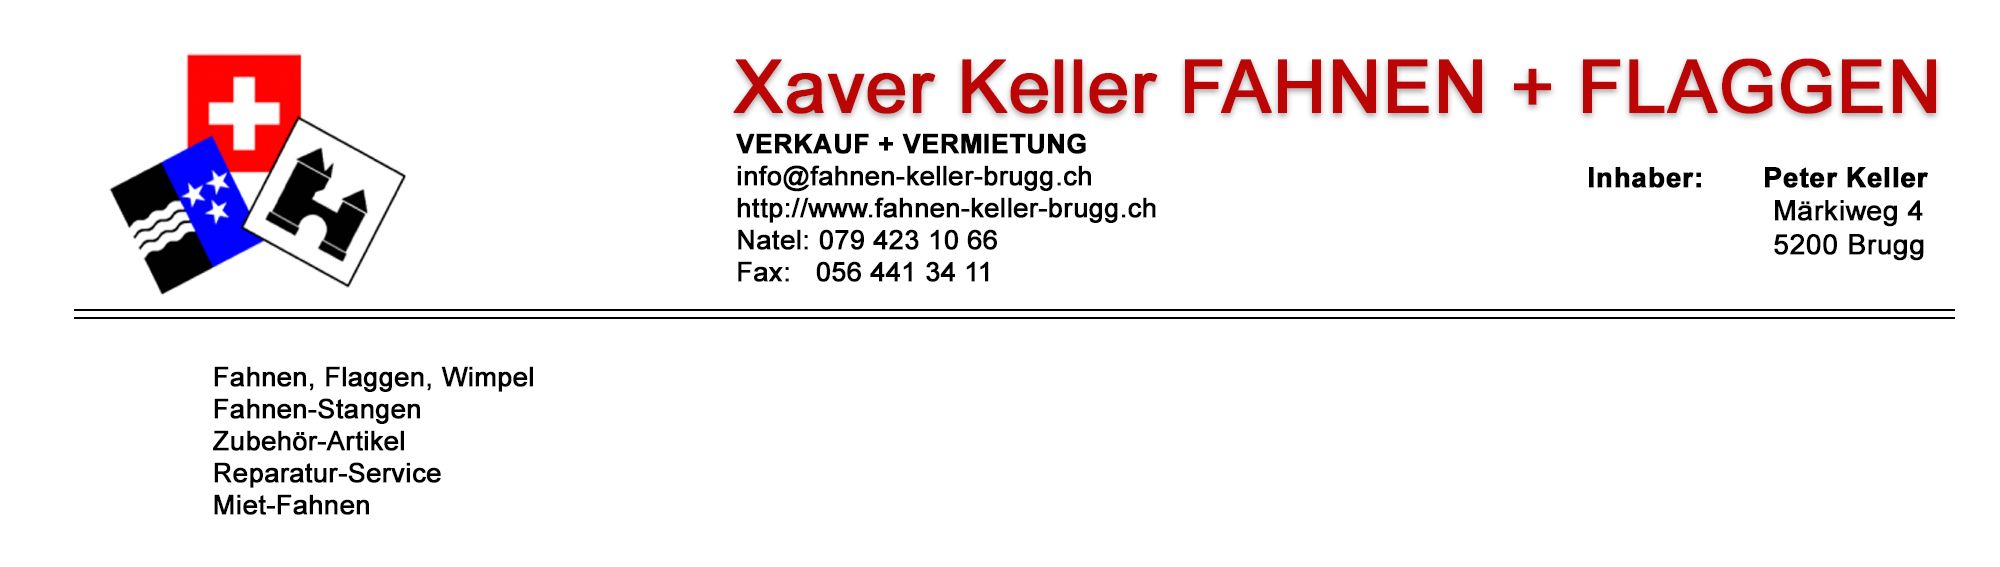 Keller Fahnen Magazin 1 / 2021 deutsch by Keller Fahnen AG - Issuu